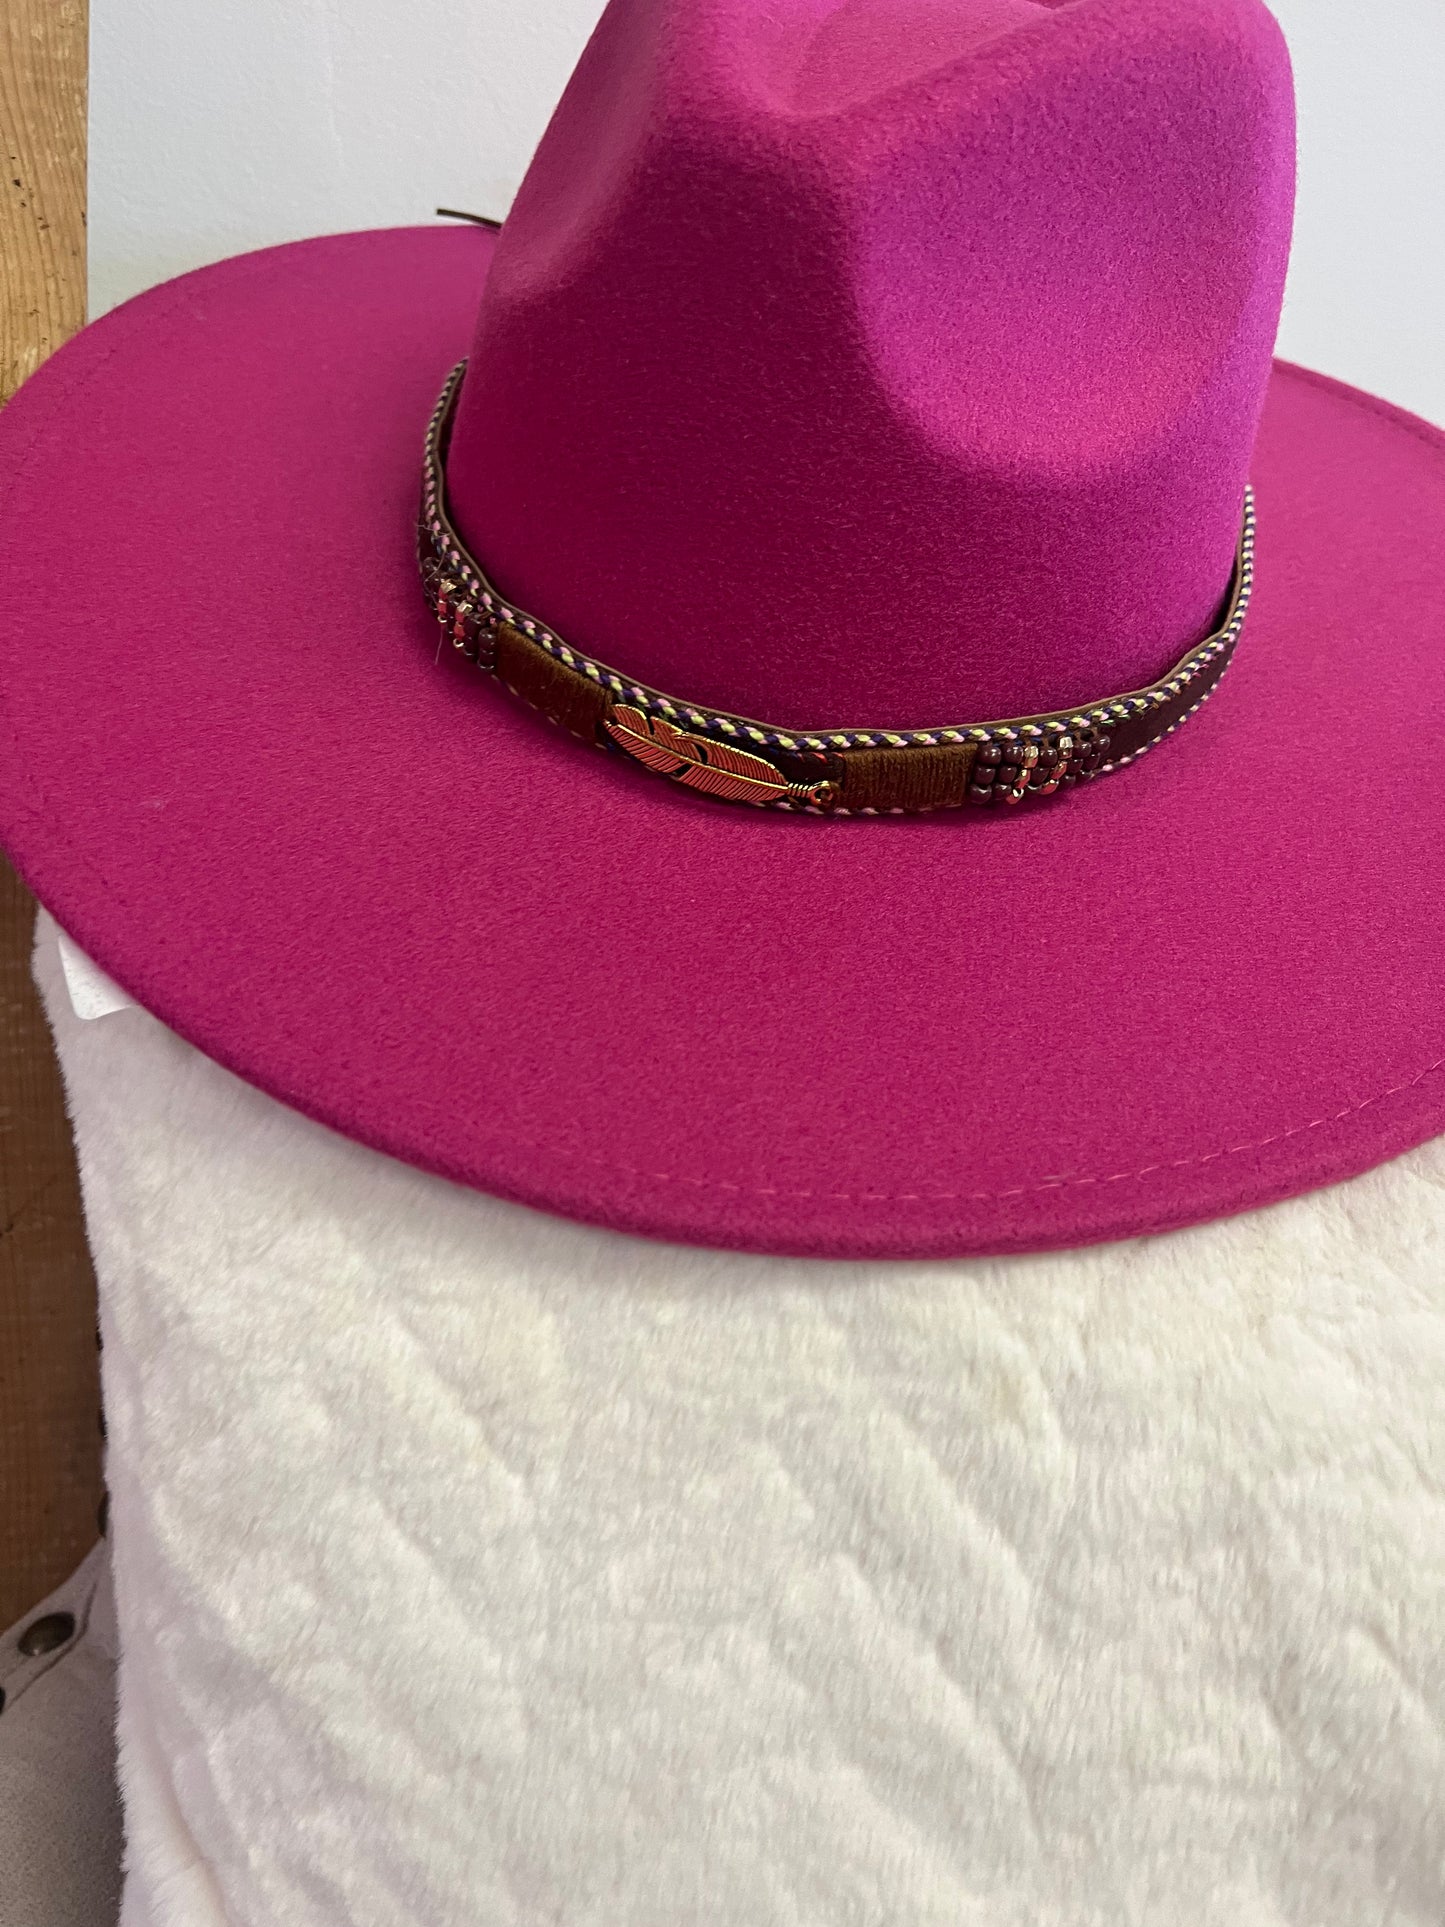 Pink Cowgirl Wide Brim Hat